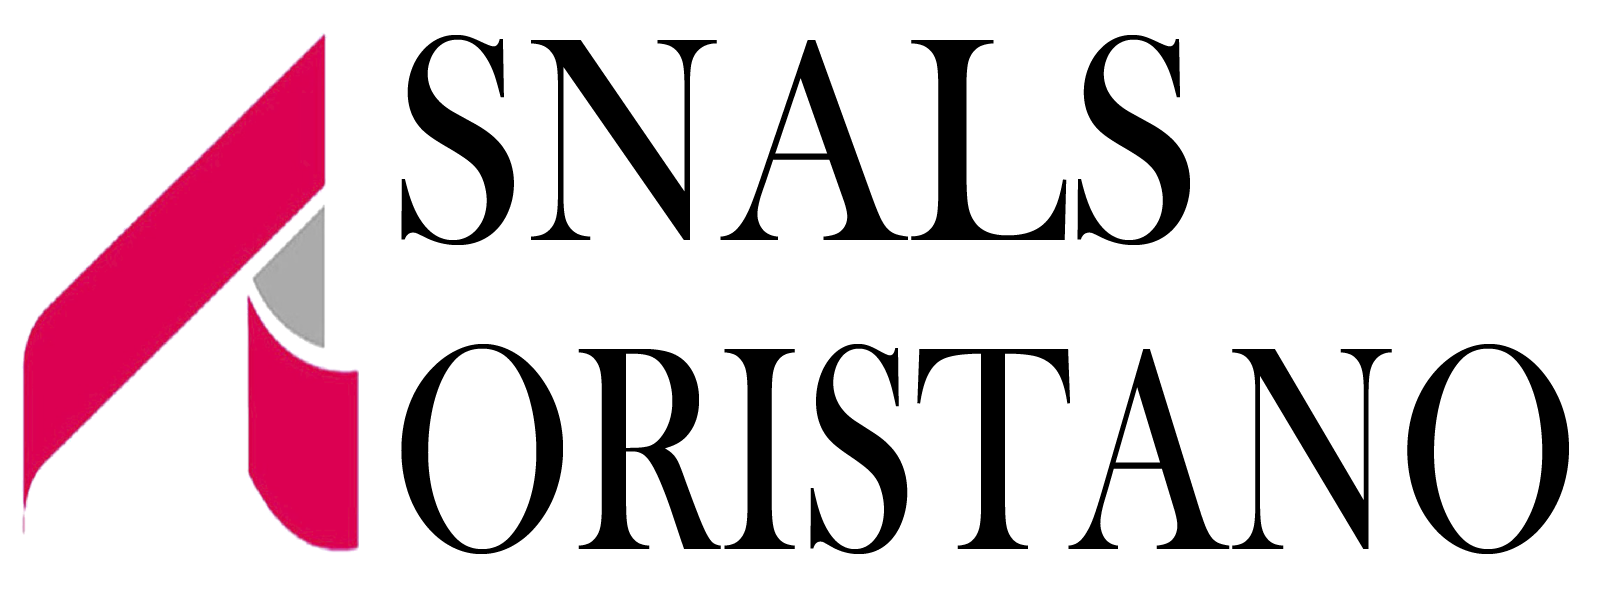 Snals Oristano Logo